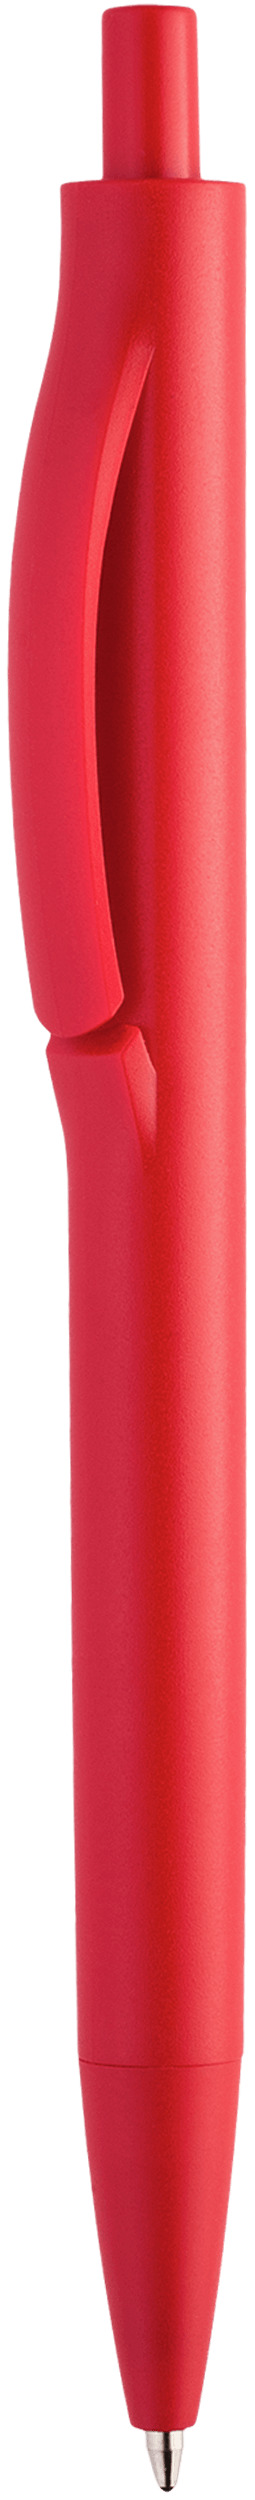 Шариковая ручка Igla Color, красная